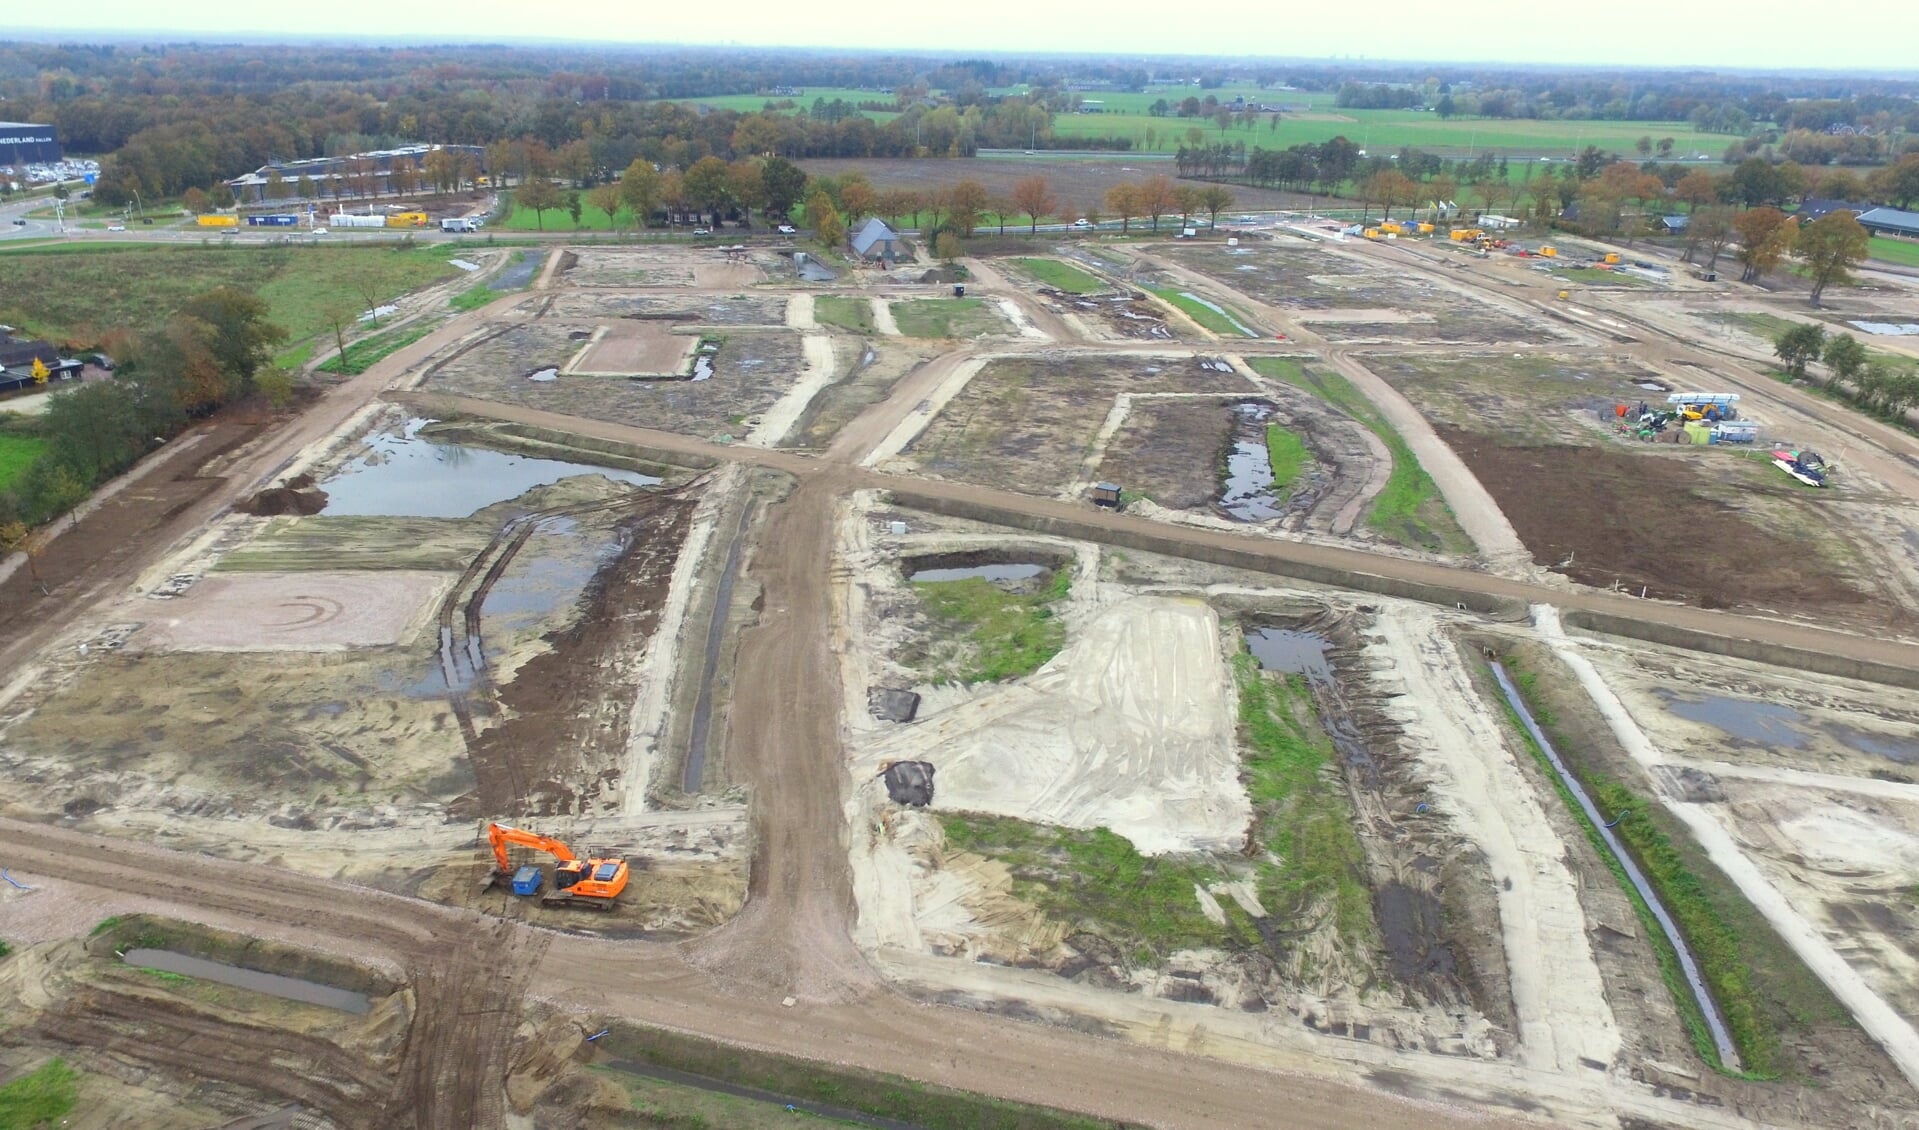 Voor de realisatie van nieuwbouwwijk Bloemendal heeft de gemeente Barneveld recent veel grond verkocht.